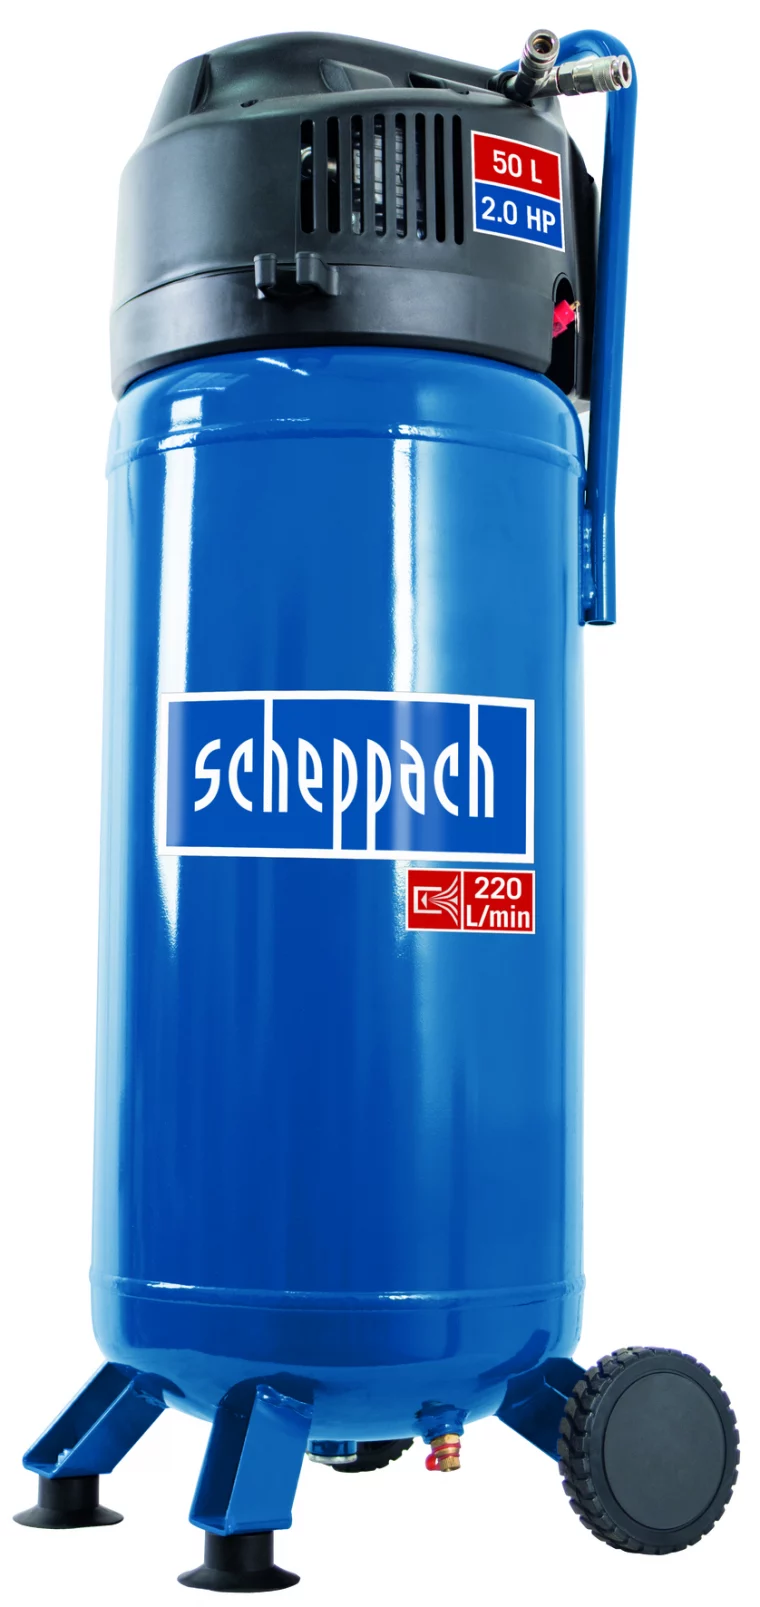 Scheppach HC 51 V